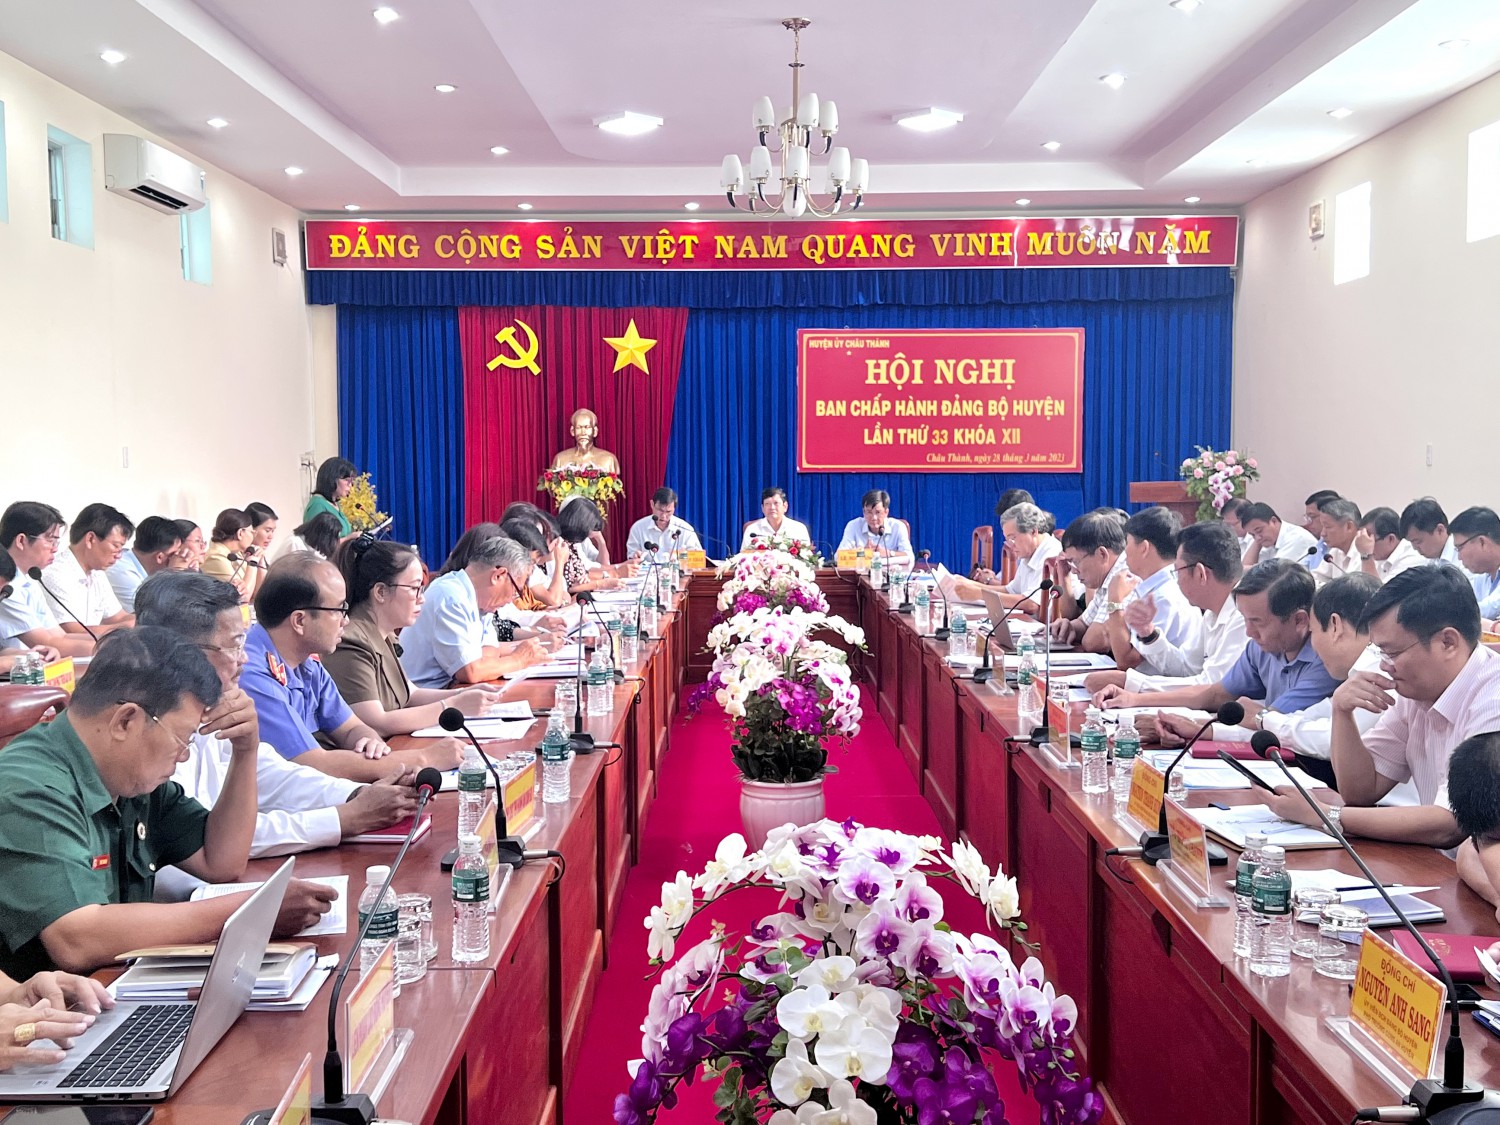 Ban chấp hành Đảng bộ huyện Châu Thành: Hội nghị lần thứ 33 khóa XII